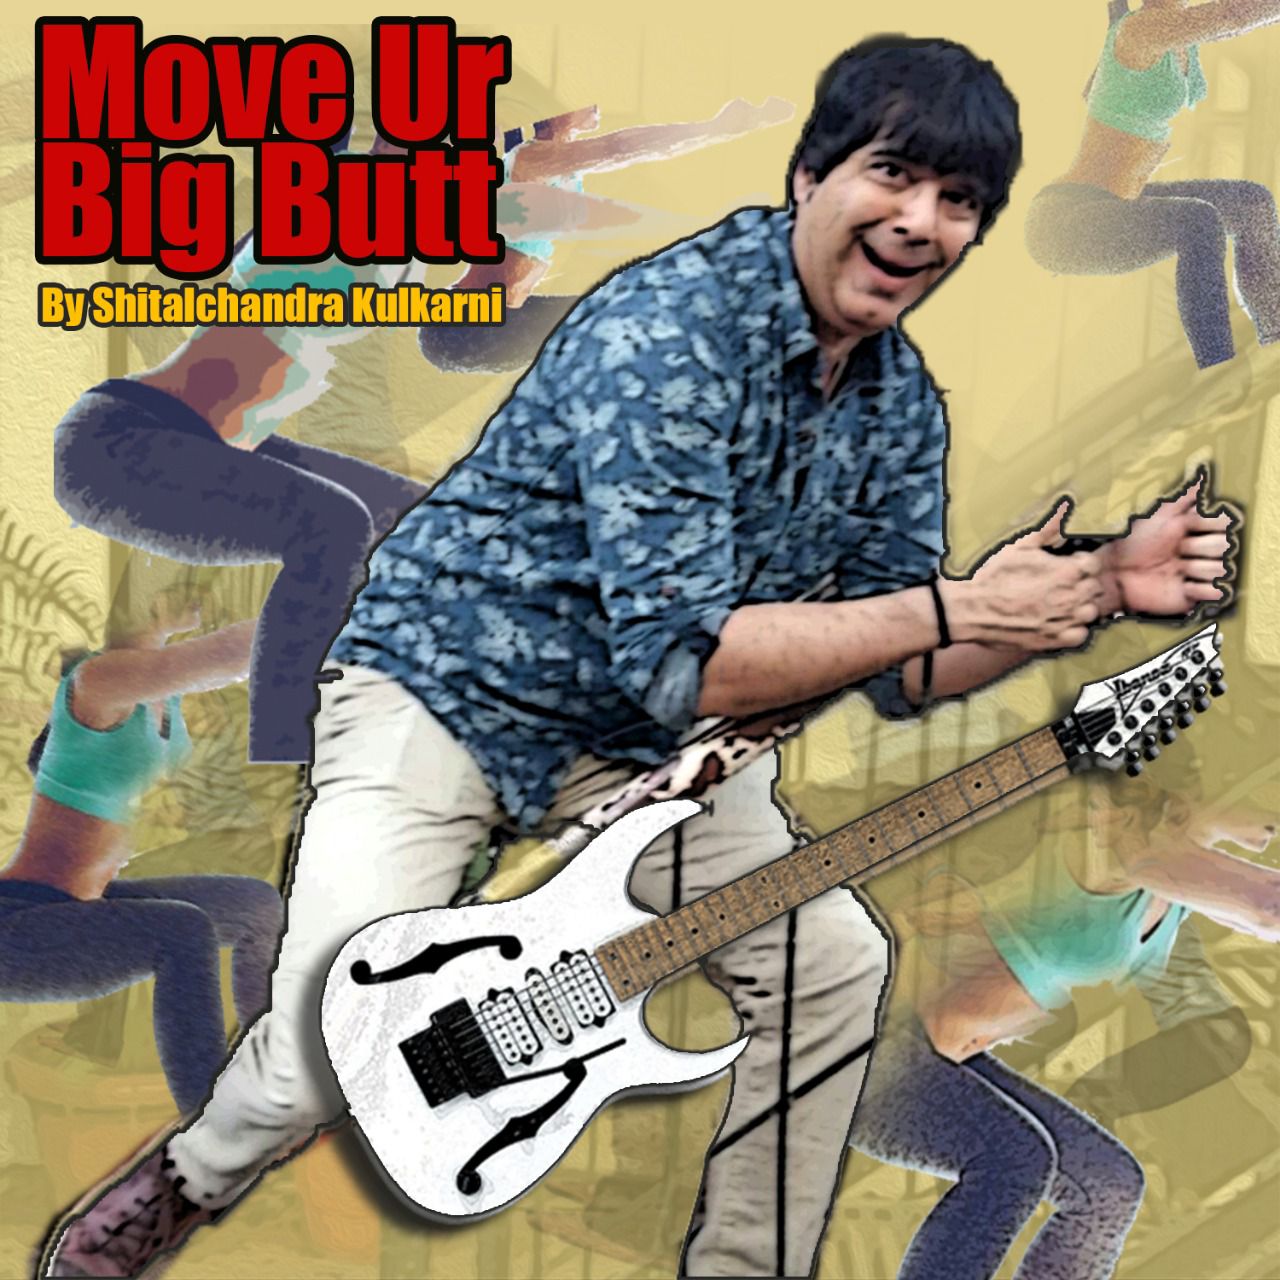 LIT Talent Awards - Move Ur Big Butt